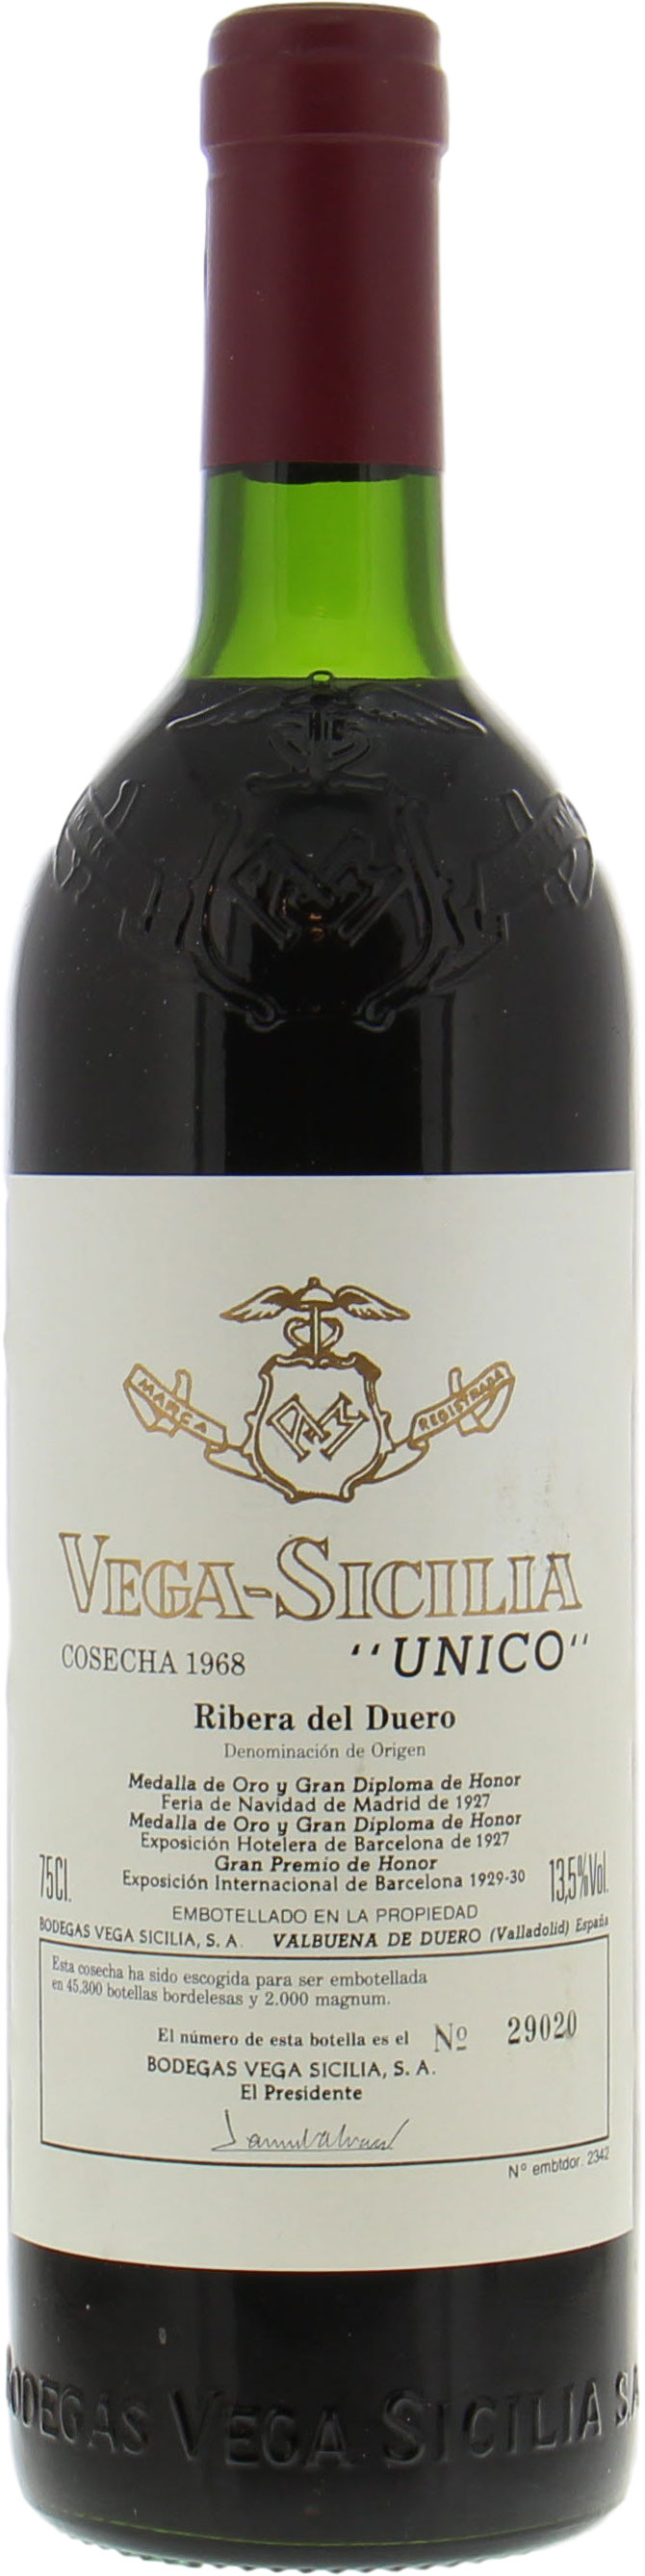 Vega Sicilia - Unico 1968 Perfect